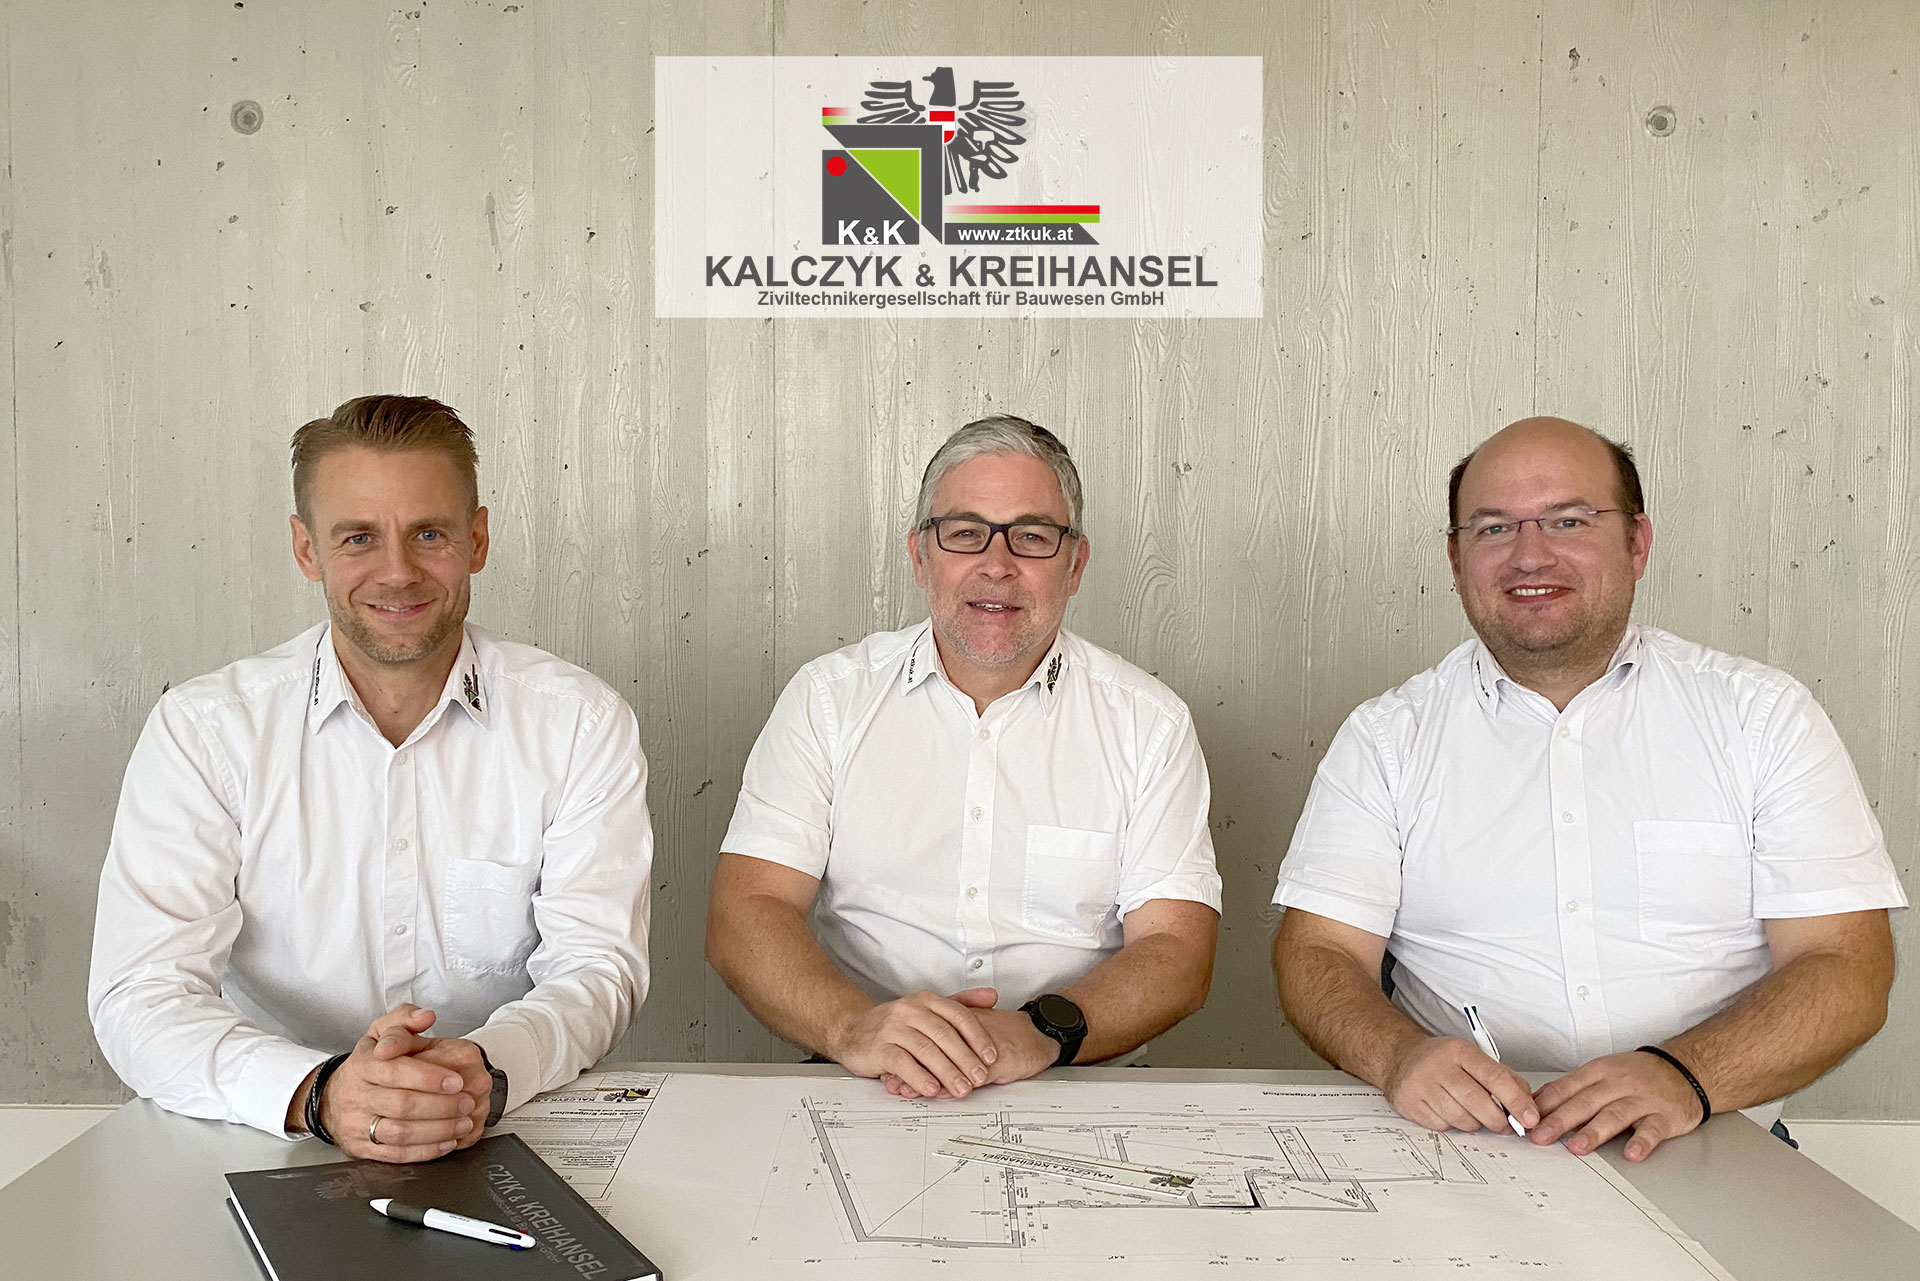 Kalczyk & Kreihansel Geschäftsführung